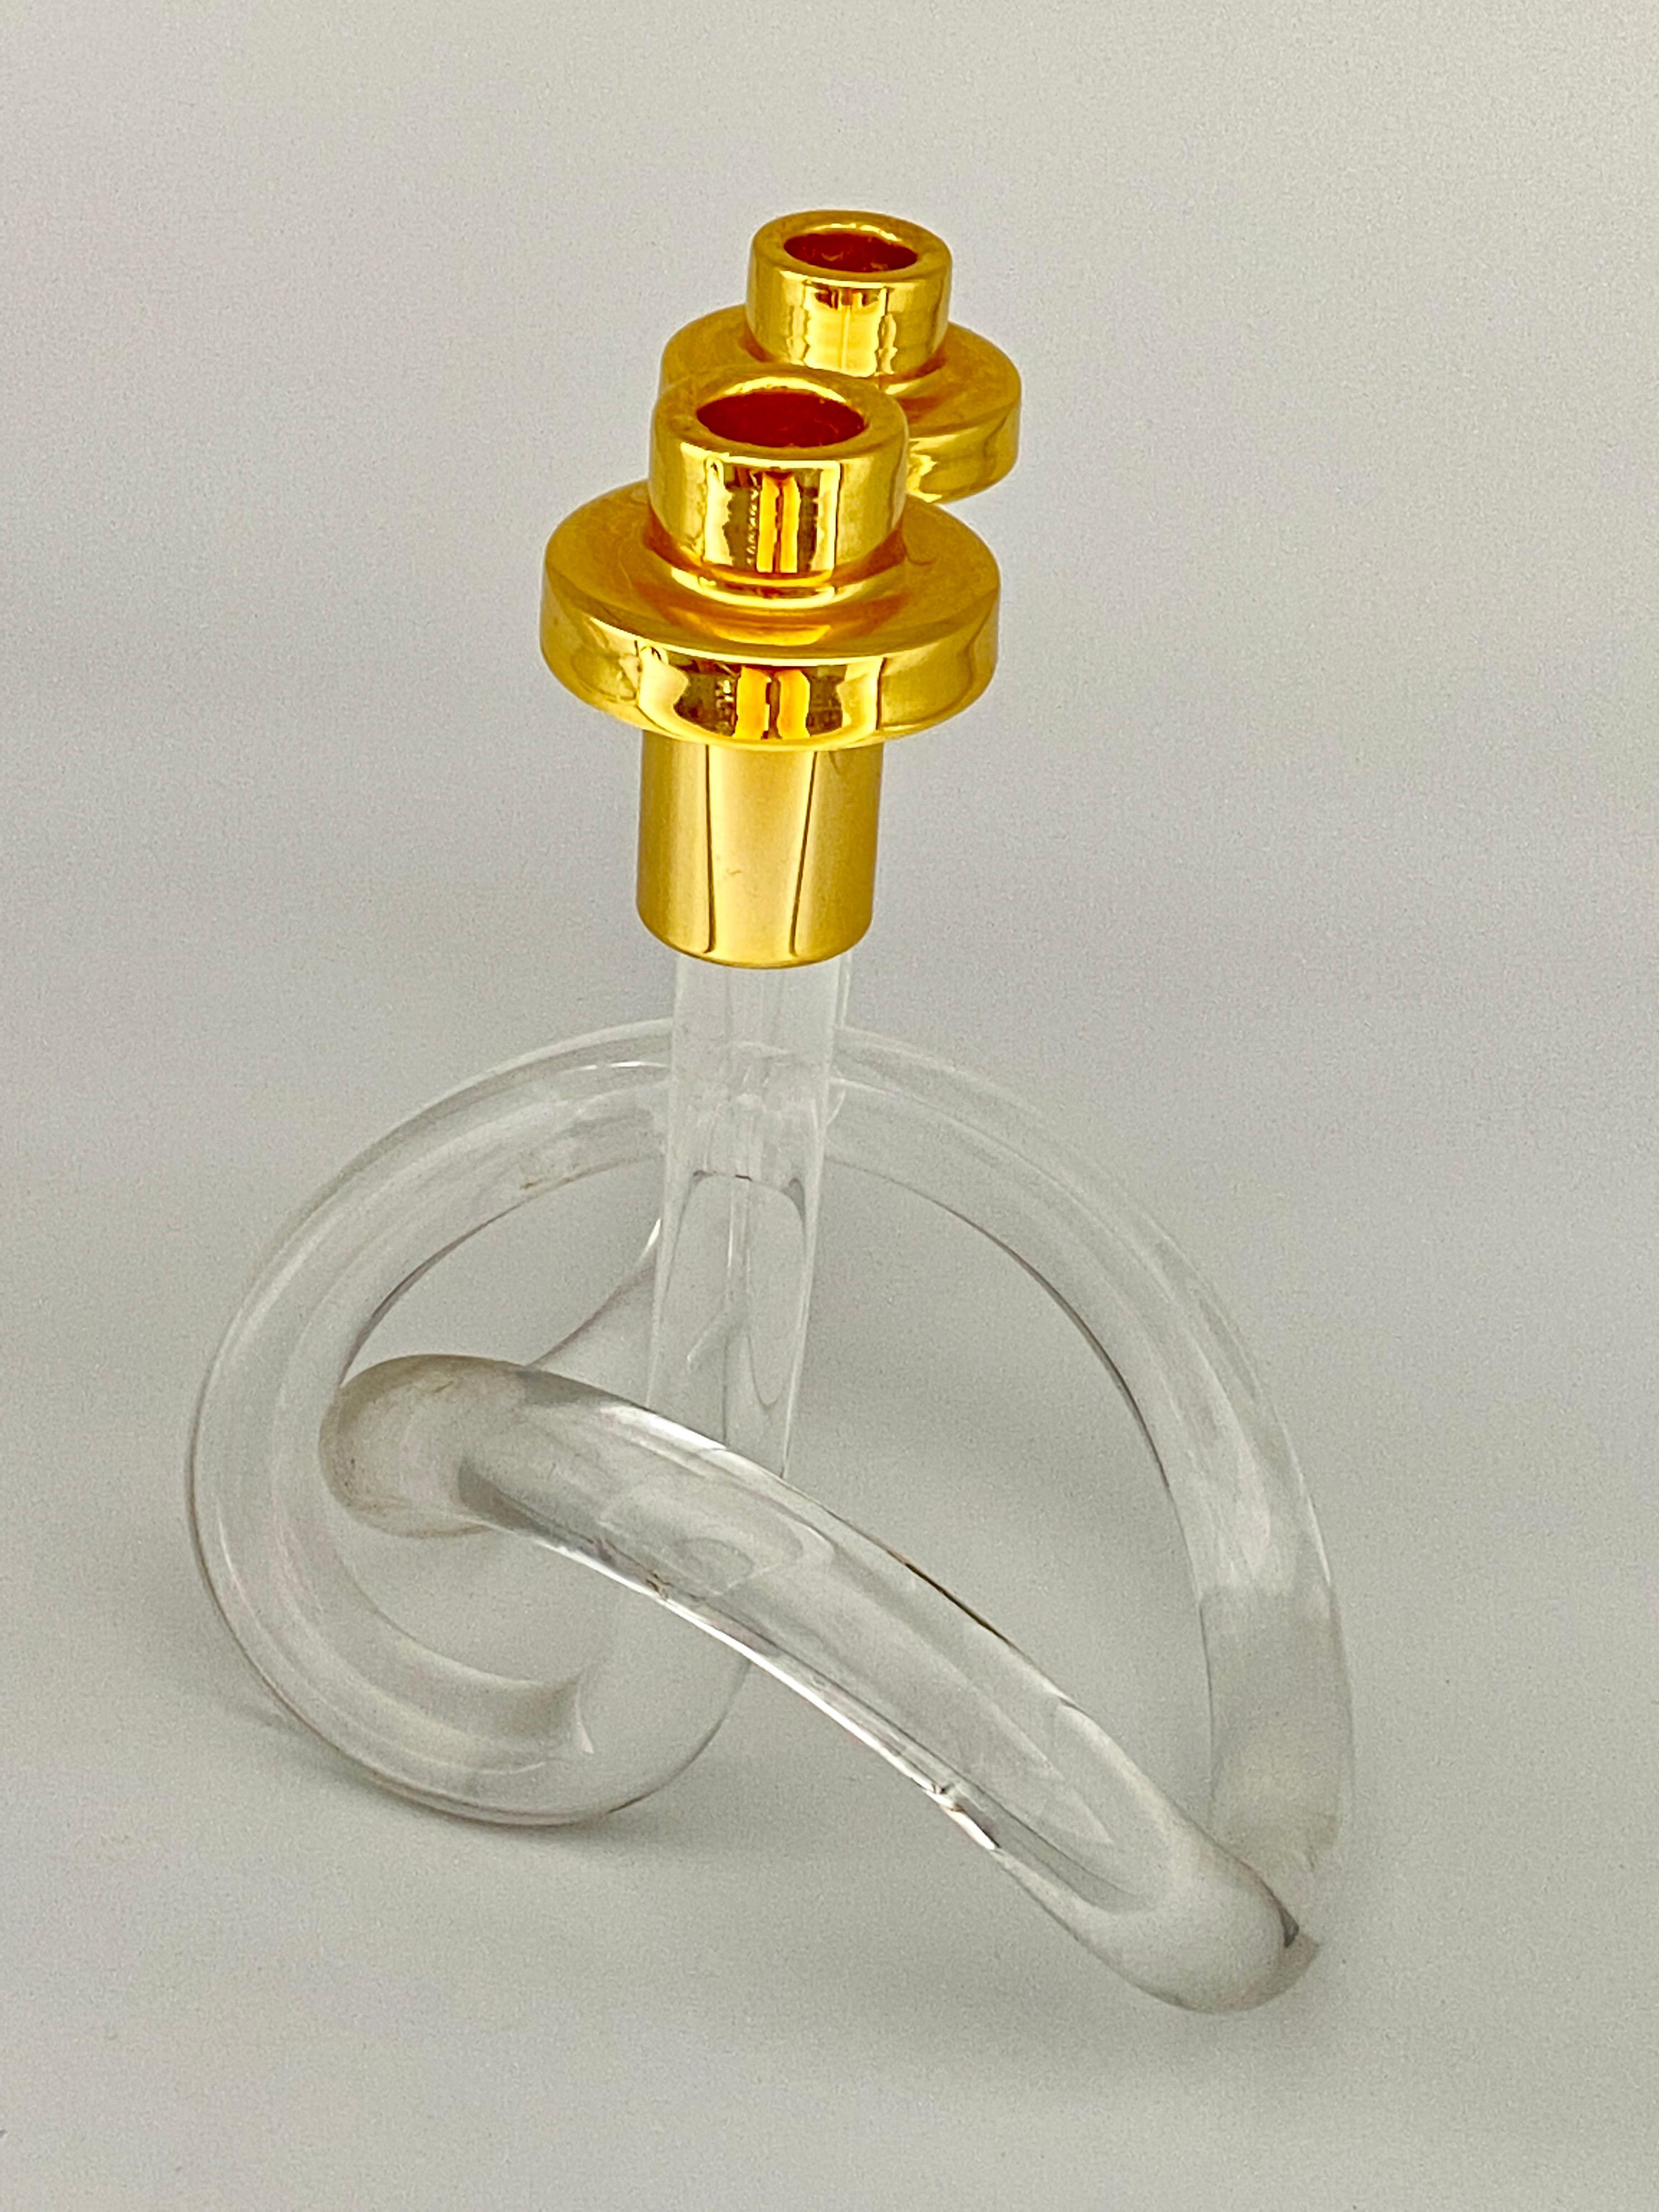 Dieser Kerzenleuchter wurde in den Vereinigten Staaten um 1940 hergestellt. Er ist aus Lucite und Messing gefertigt. Gold und transparente Farbe. Die Künstlerin ist Dorothy Thorpe.